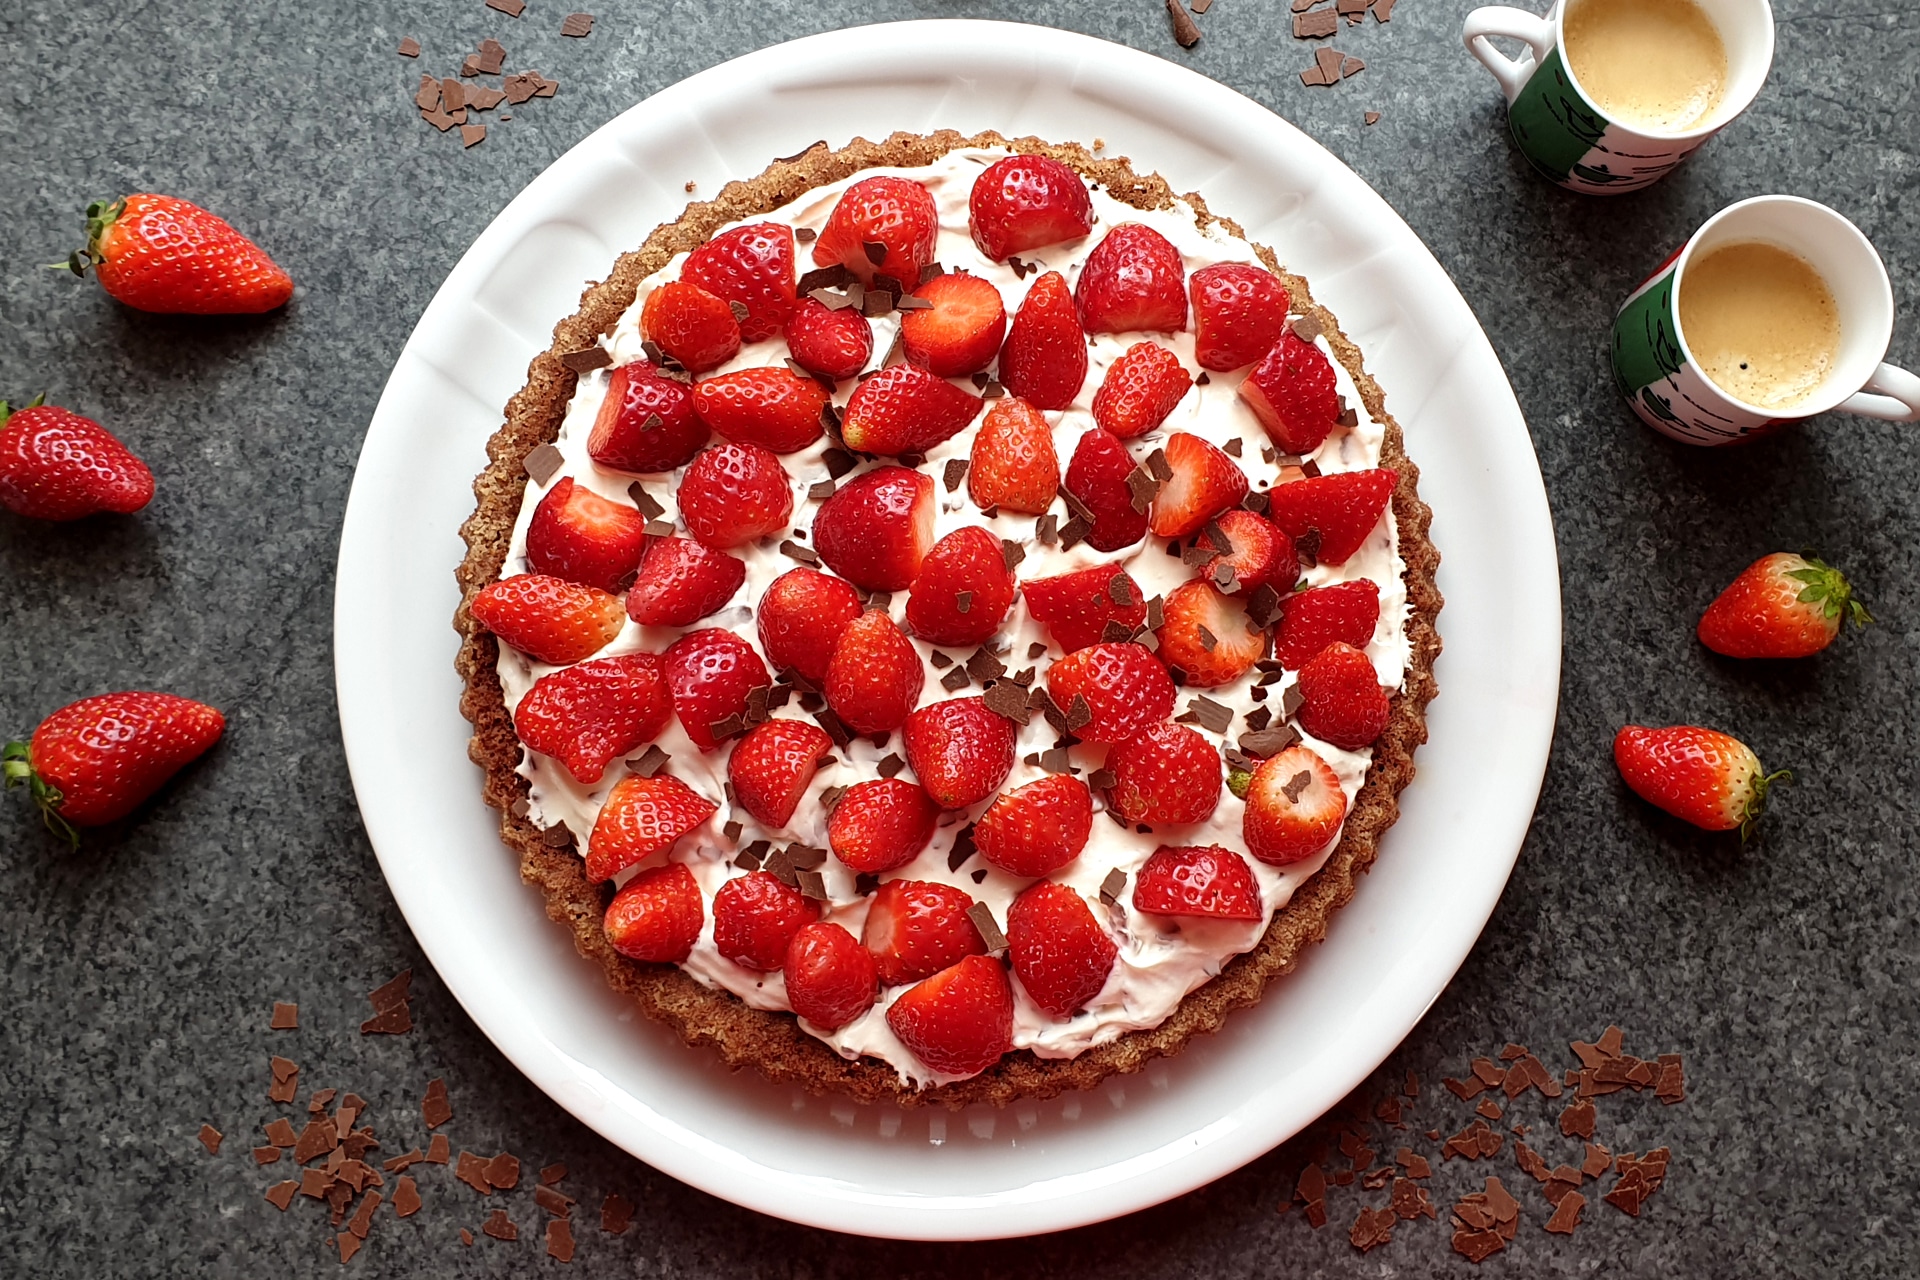 Strawberry cake with stracciatella cream